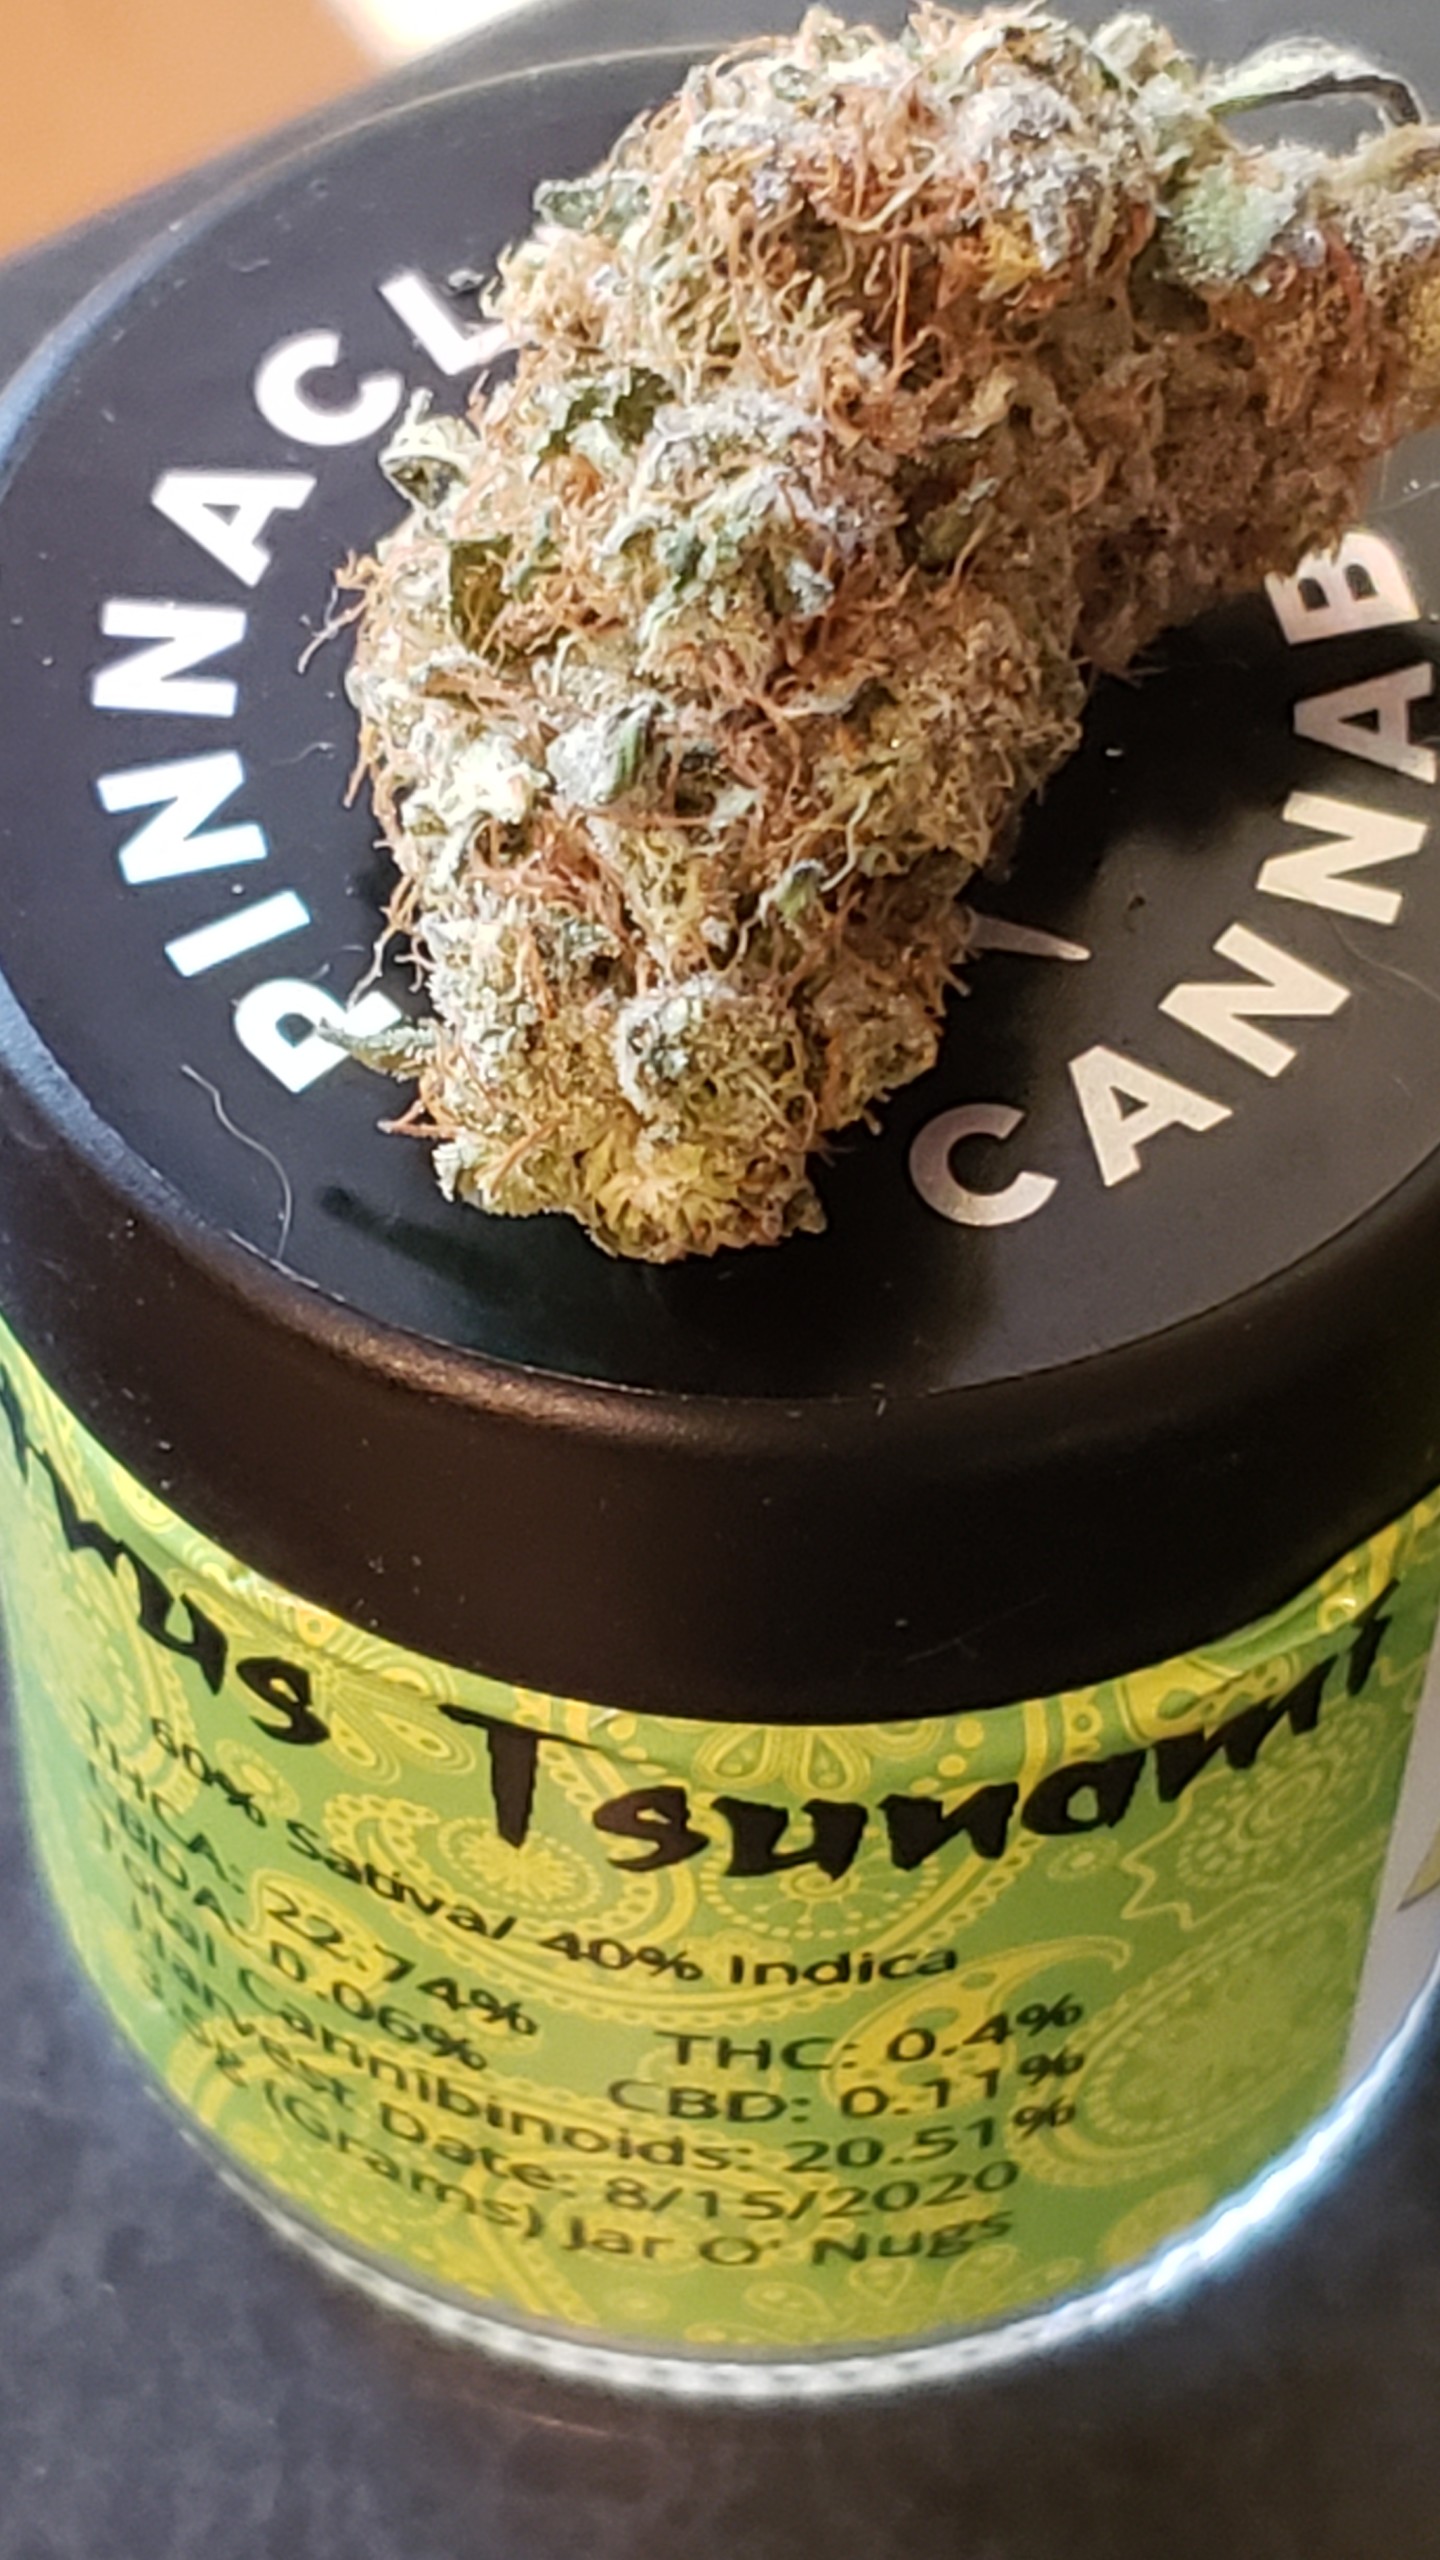 citrus tsunami pinnacle cannabis